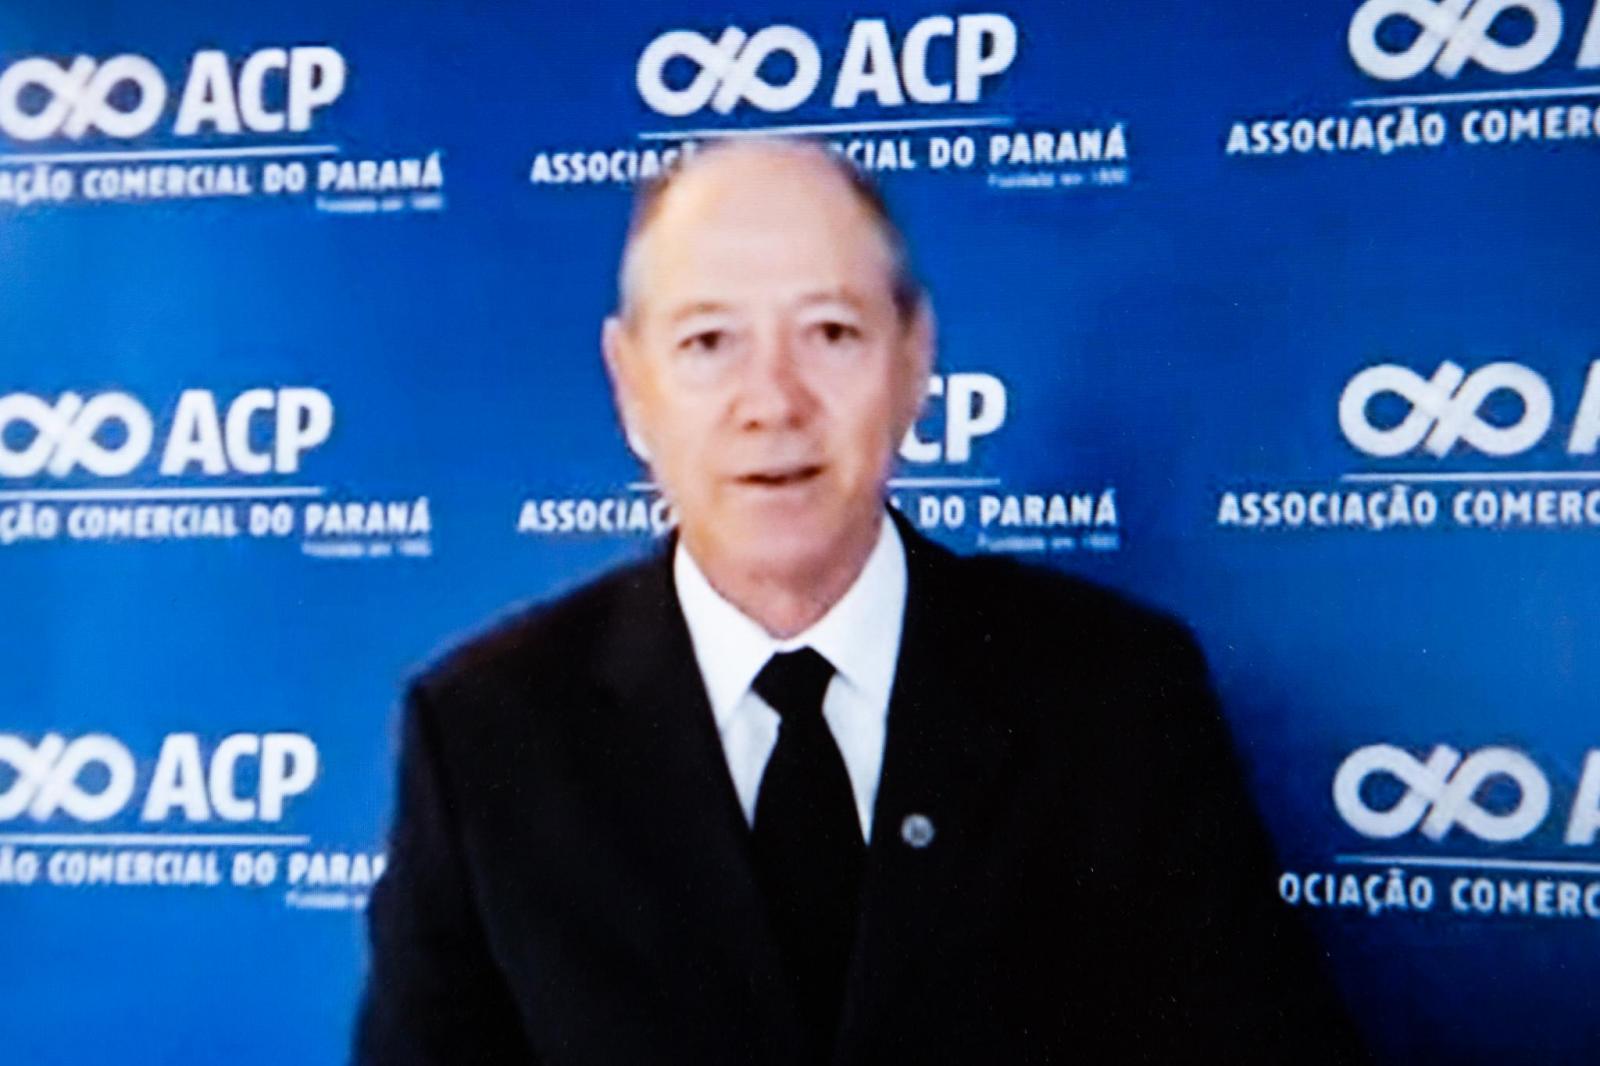 Na Tribuna Livre, vereadores recebem sugestões da ACP contra pandemia